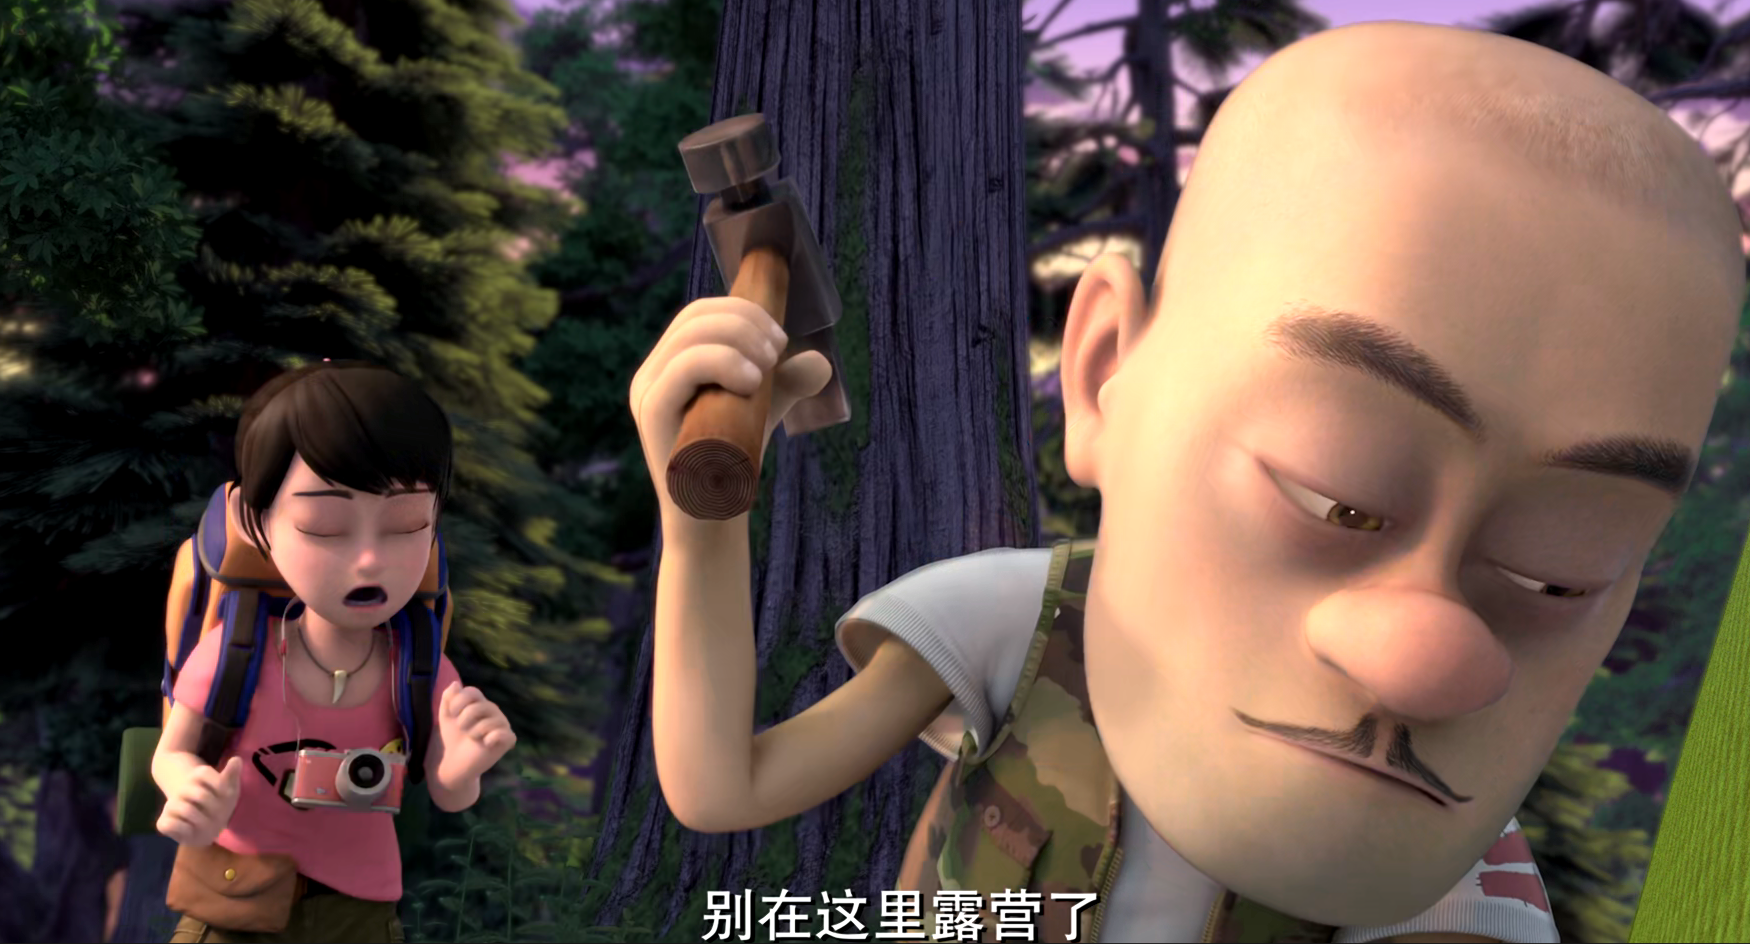 熊出没:两人在树林里度过难忘的一夜,赵琳才知道光头强的好